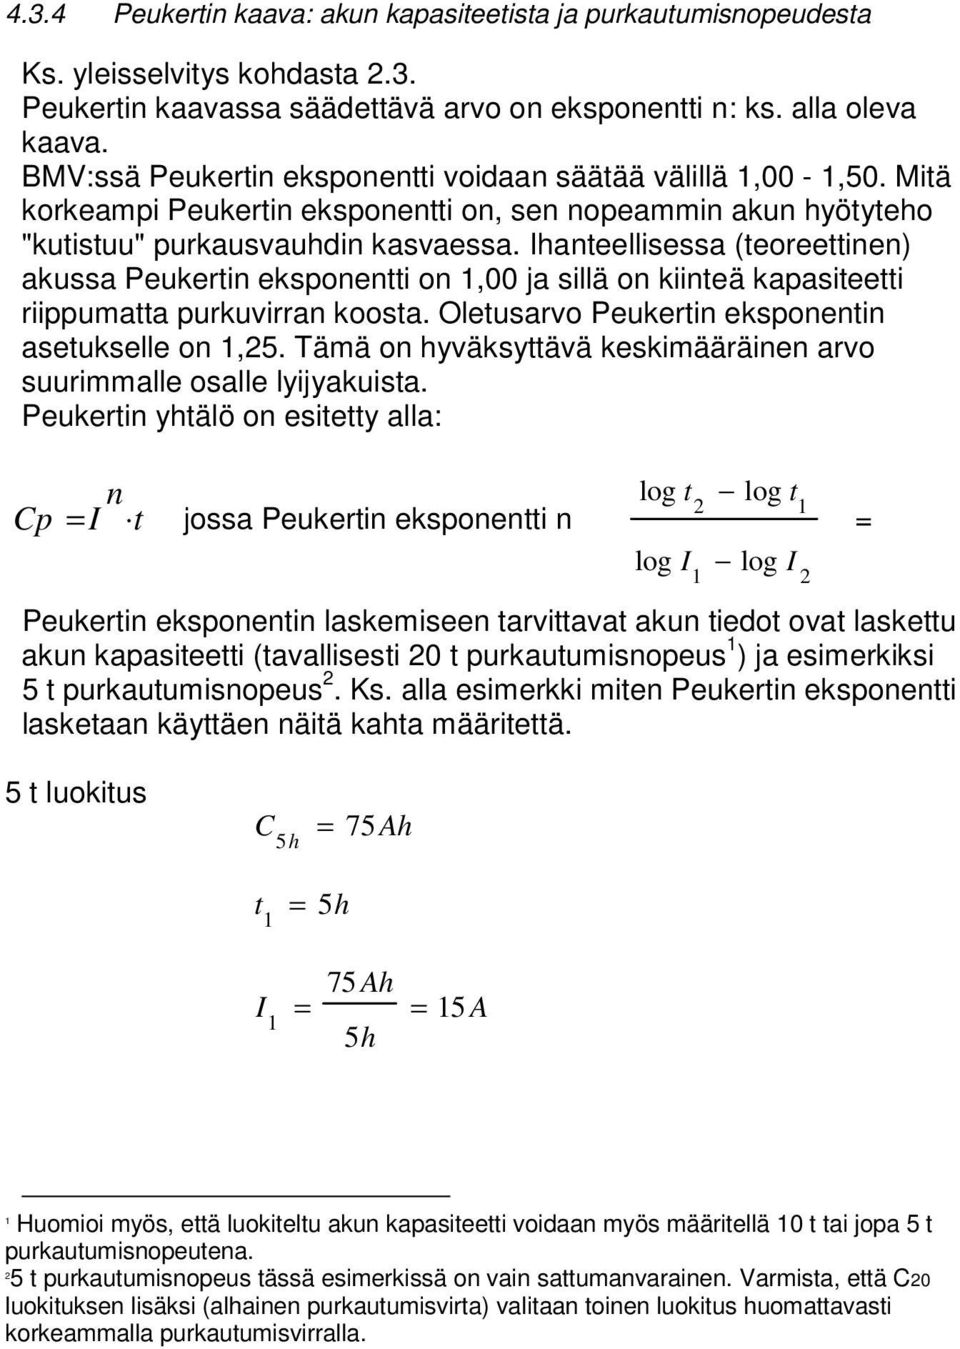 Ihanteellisessa (teoreettinen) akussa Peukertin eksponentti on 1,00 ja sillä on kiinteä kapasiteetti riippumatta purkuvirran koosta. Oletusarvo Peukertin eksponentin asetukselle on 1,25.